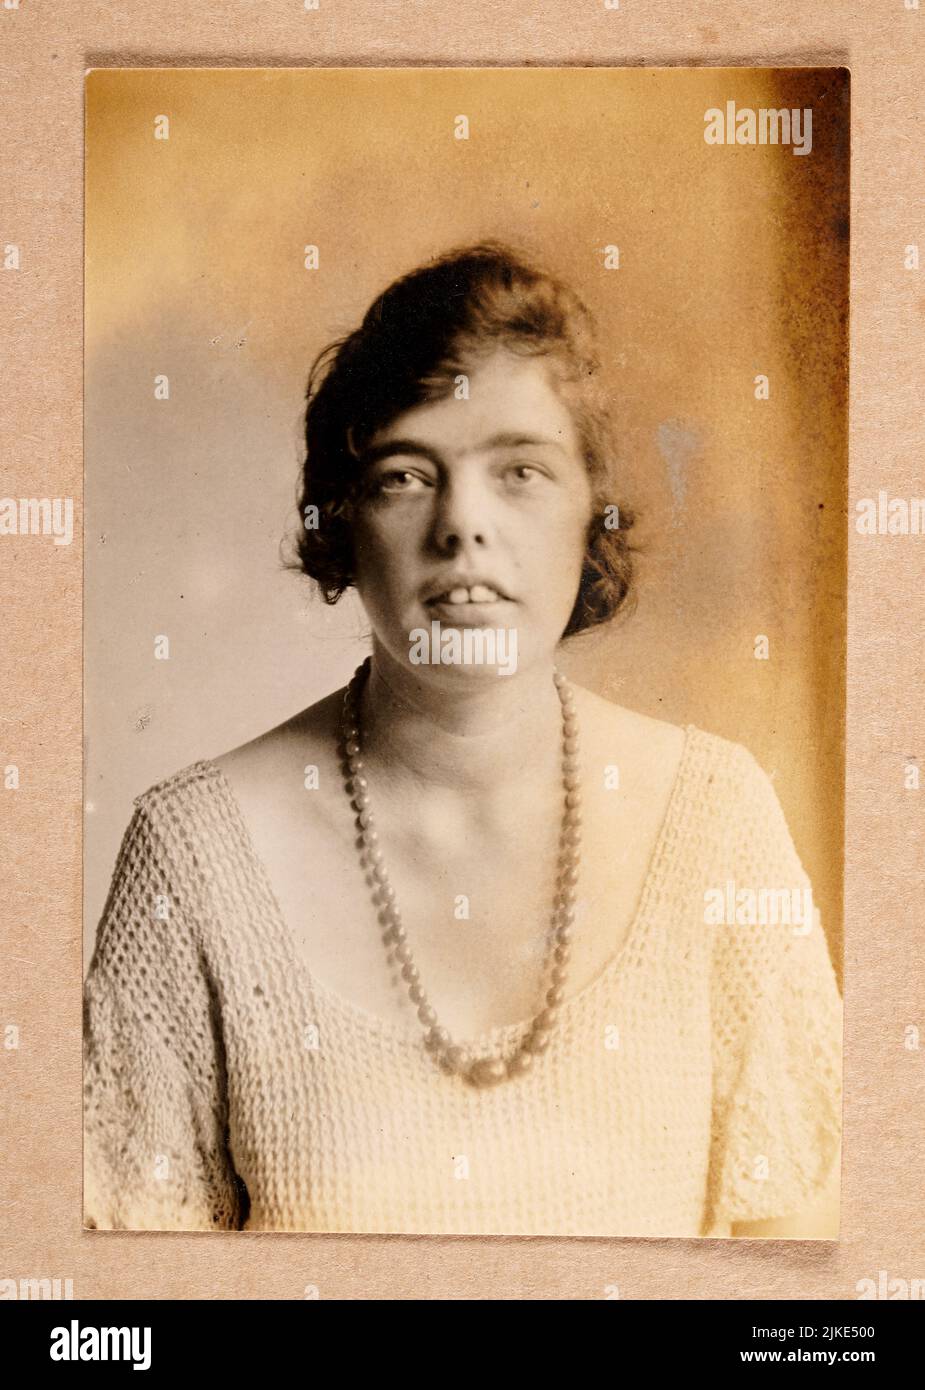 Fotografía de la vendimia de una mujer joven que llevaba collar de perlas, dientes prominentes, 1920s, desconocida Foto de stock